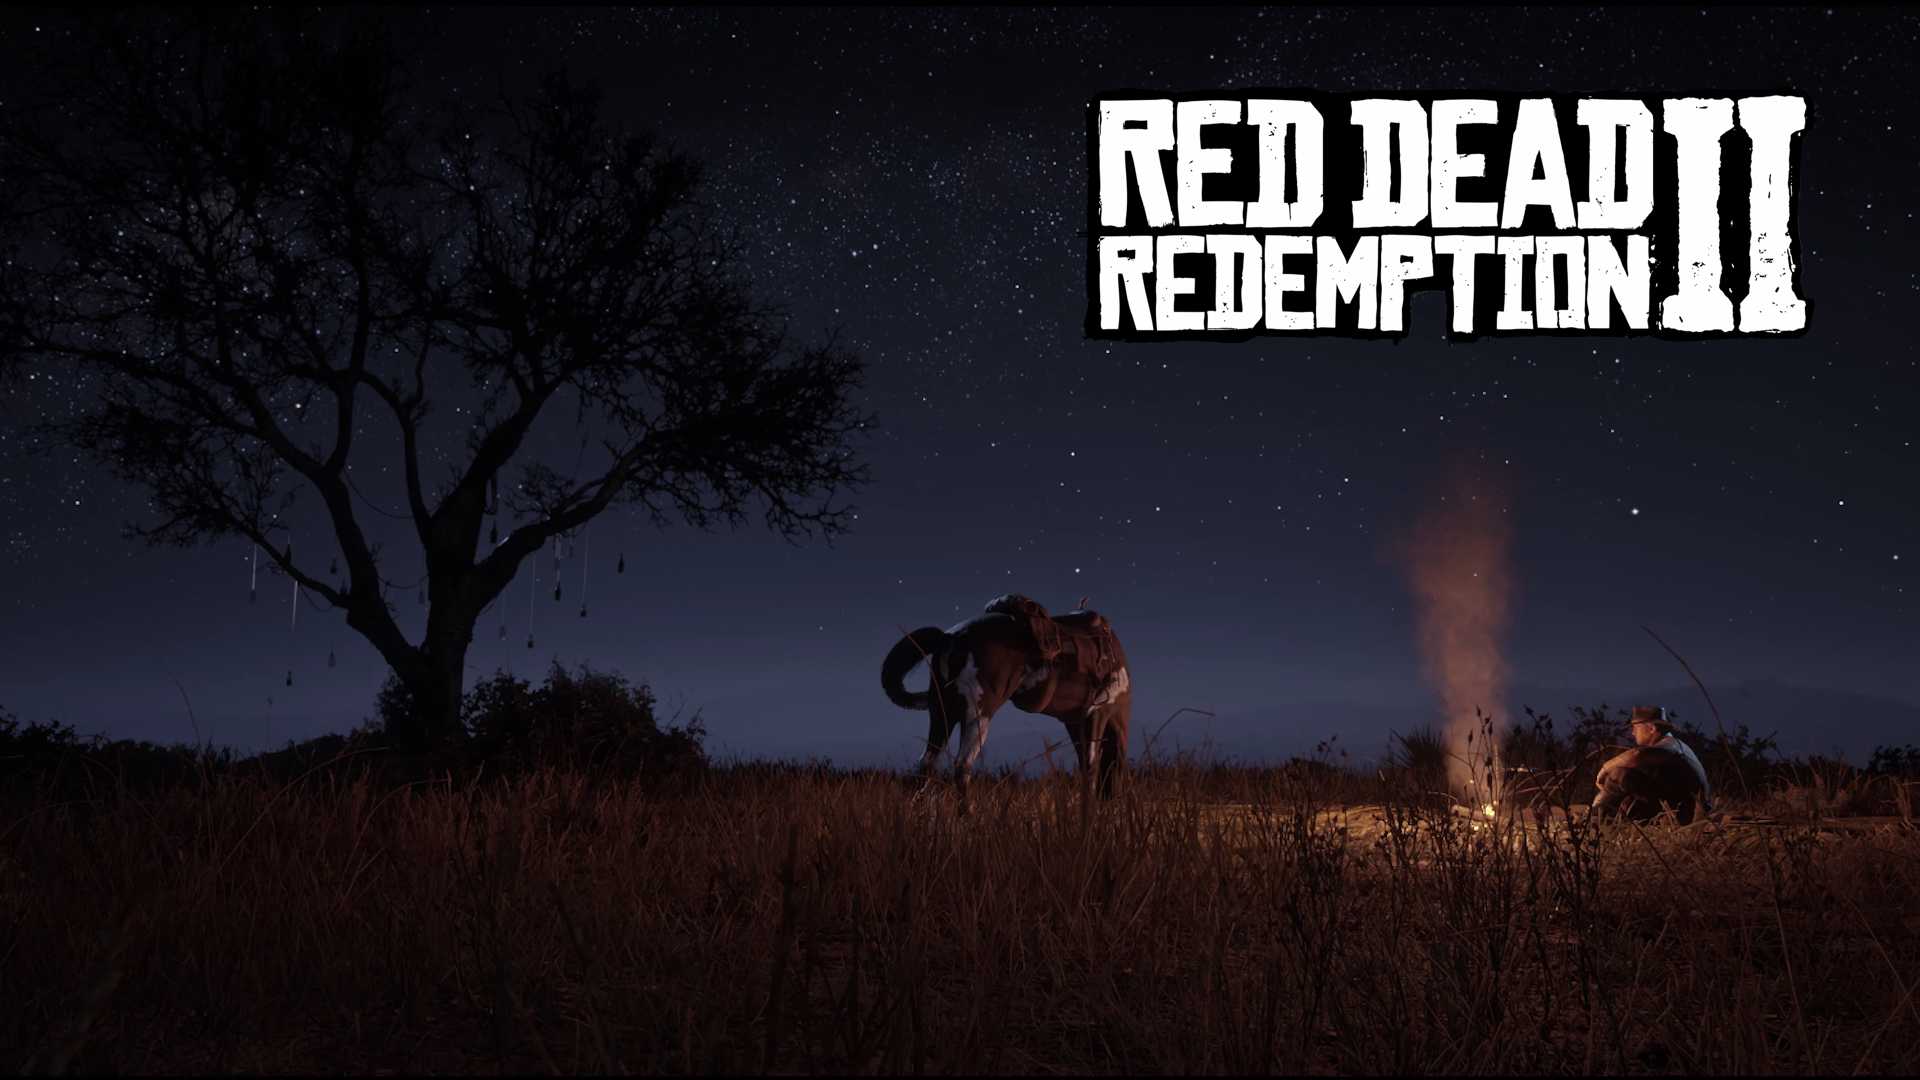 Red dead redemption 2 — все локации незнакомцев